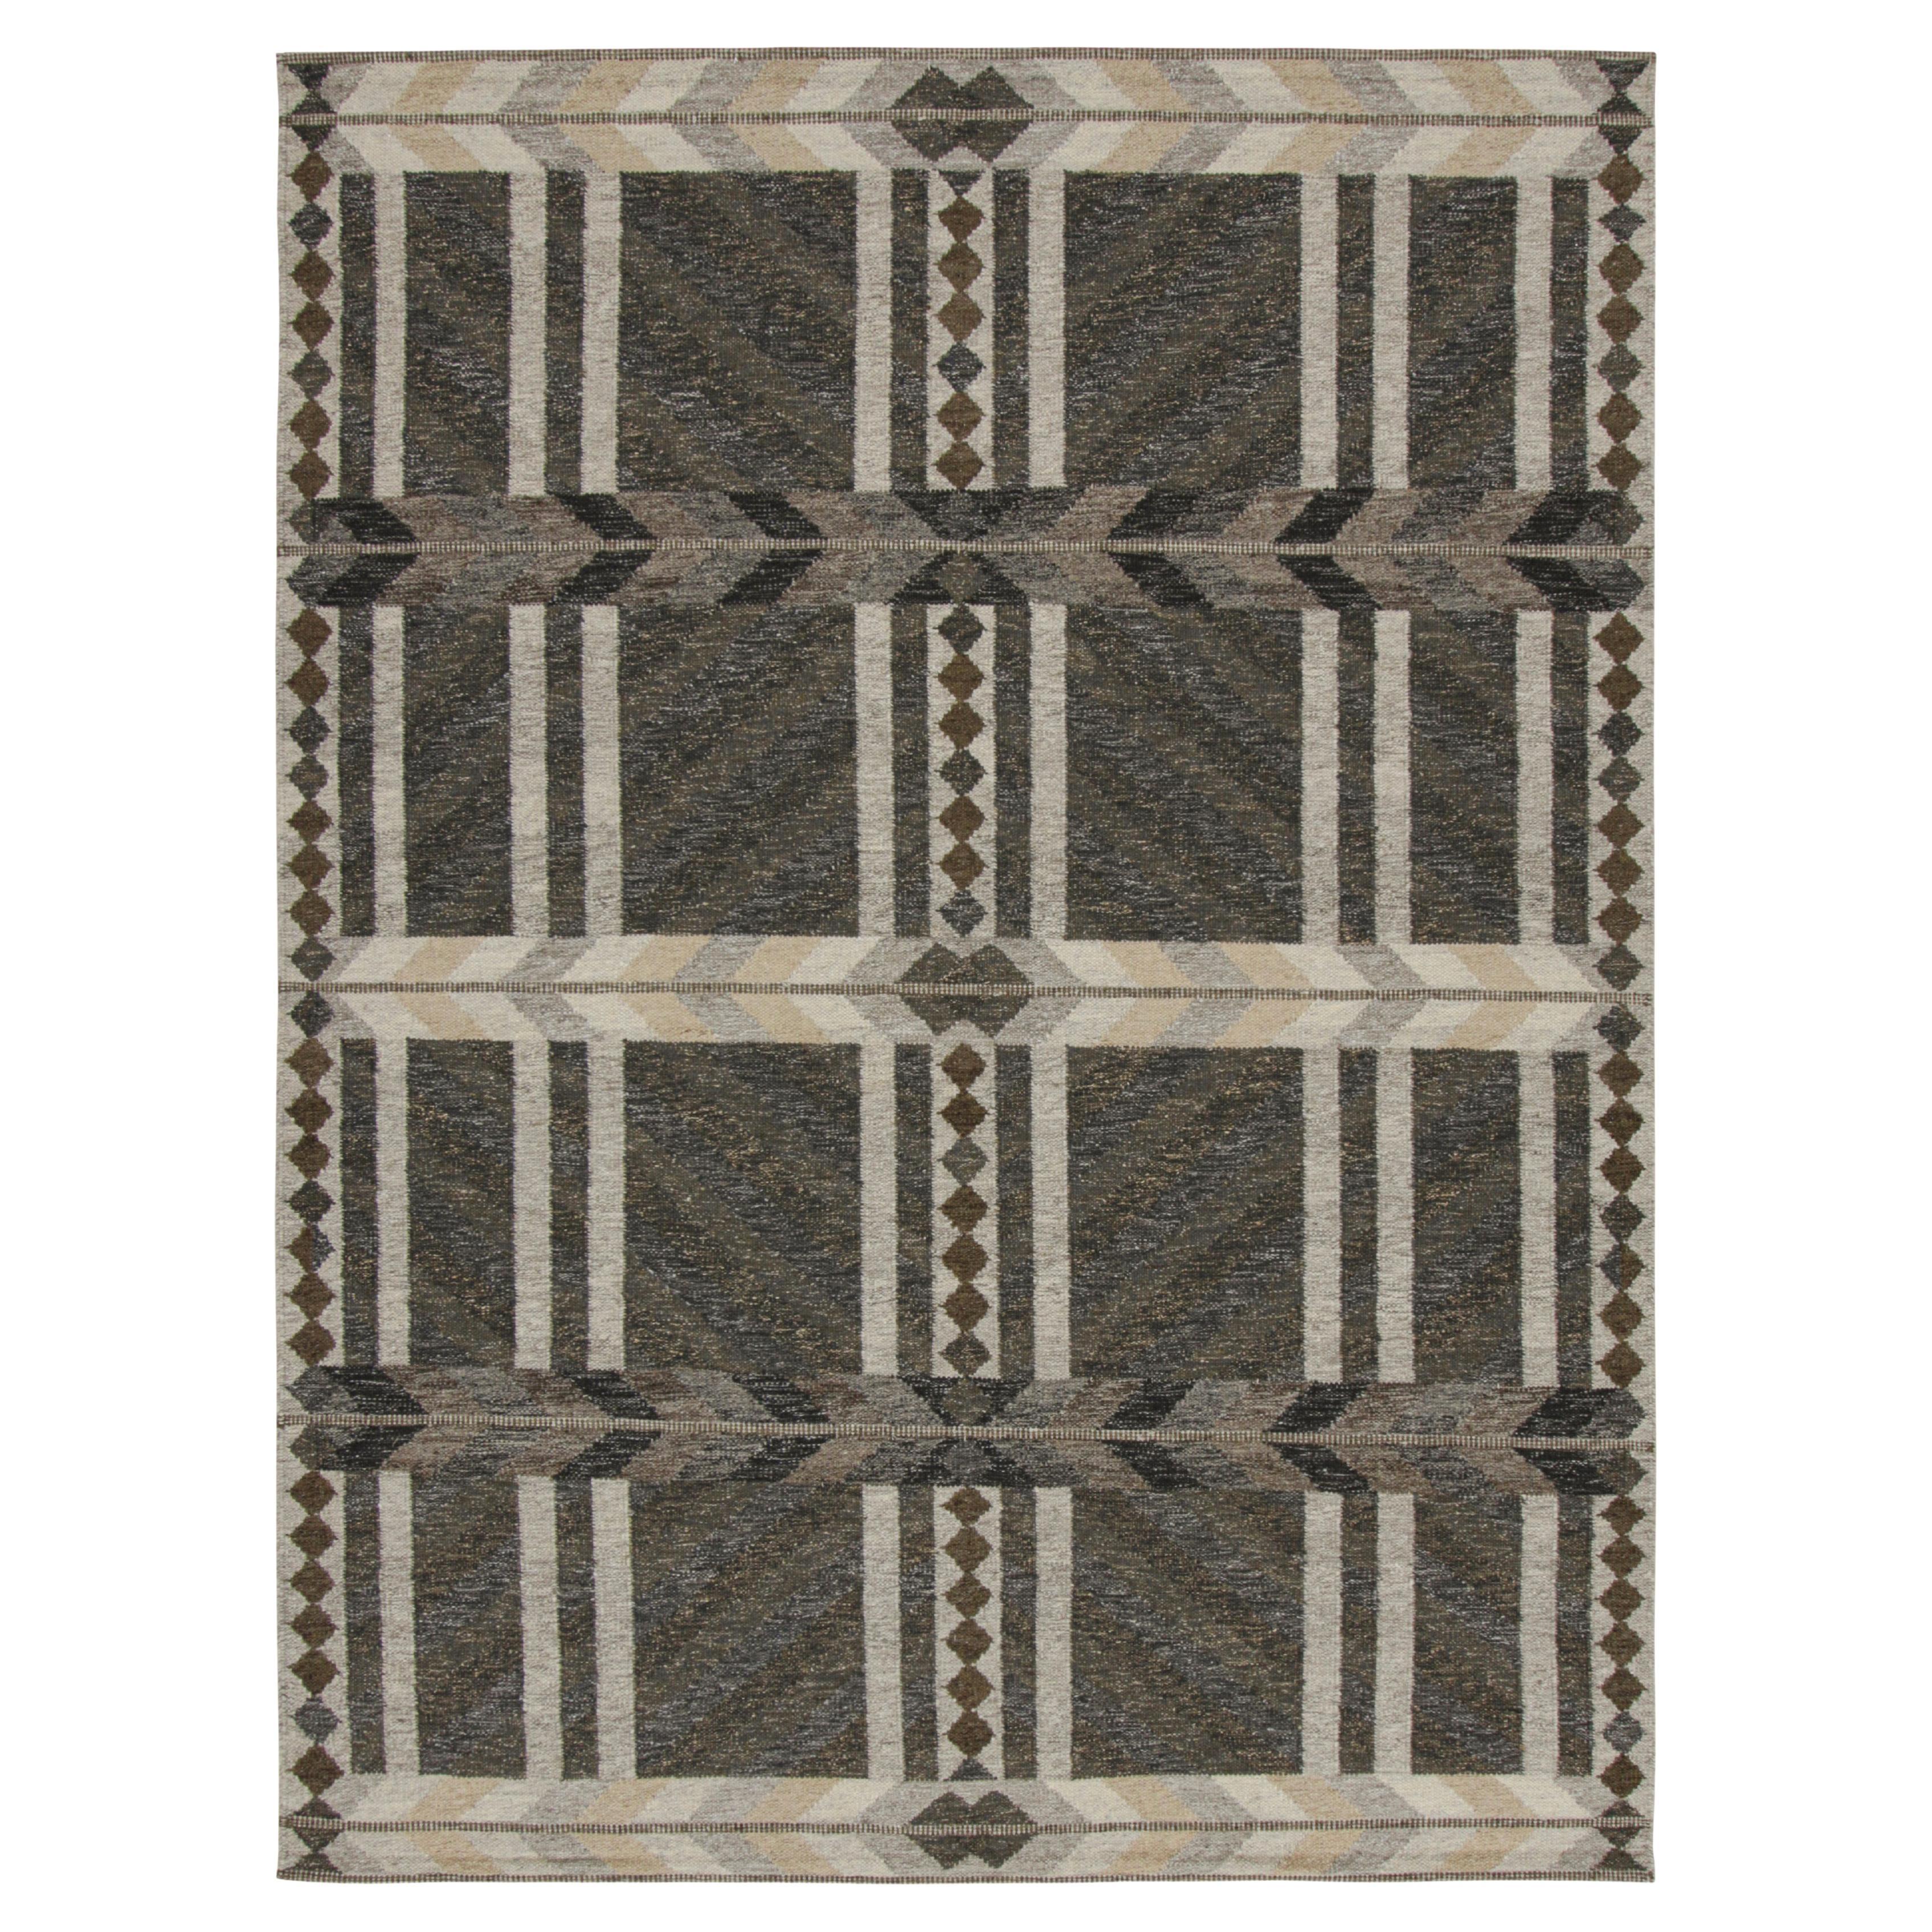 Rug & Kilim's Teppich im skandinavischen Stil in Grau mit geometrischen Mustern